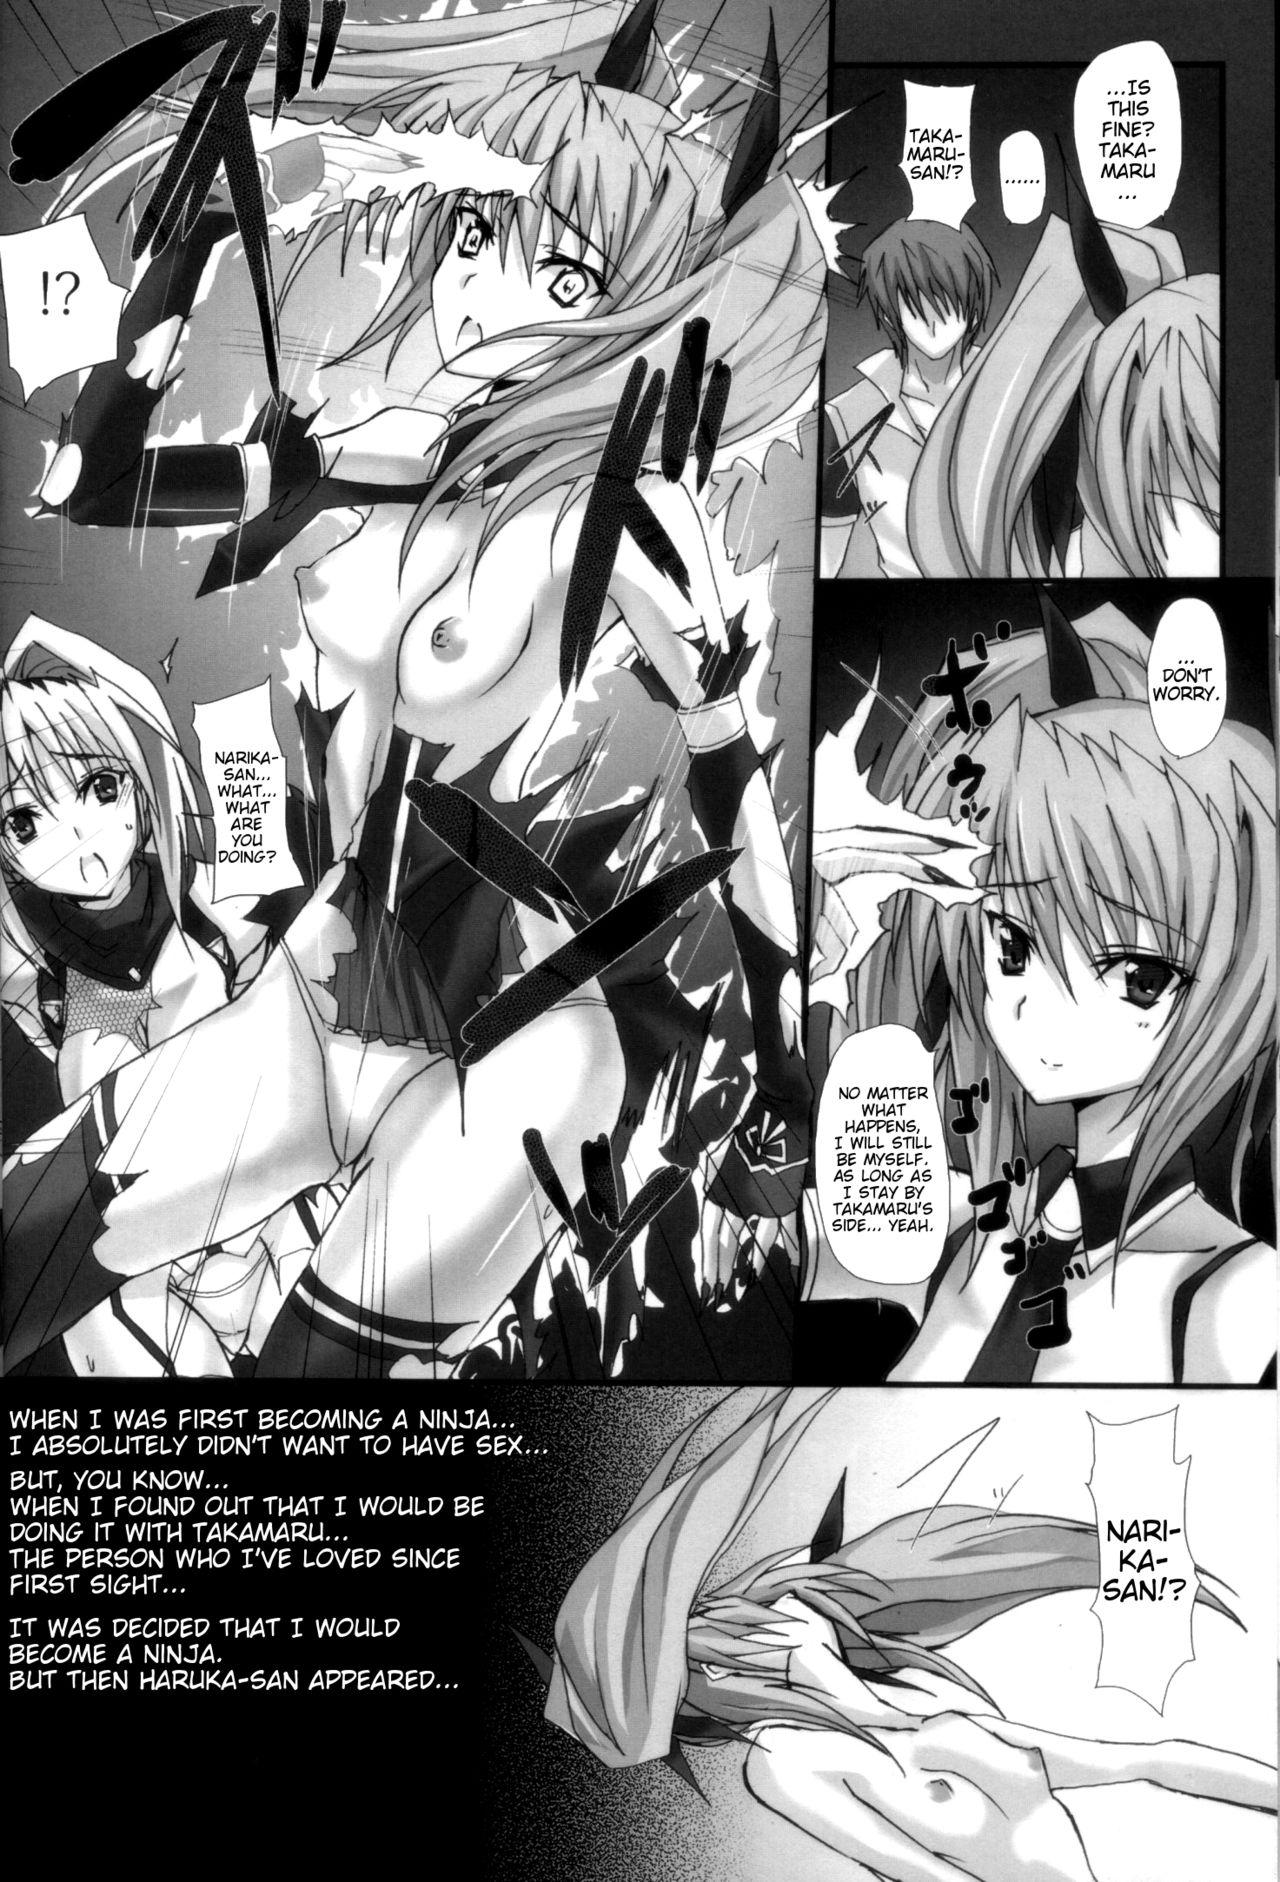 Friend Yami wo Matoishi Homura wa Ono ga Mi wo Boukyaku no Gokuen e - Beat blades haruka Gay Bondage - Page 11